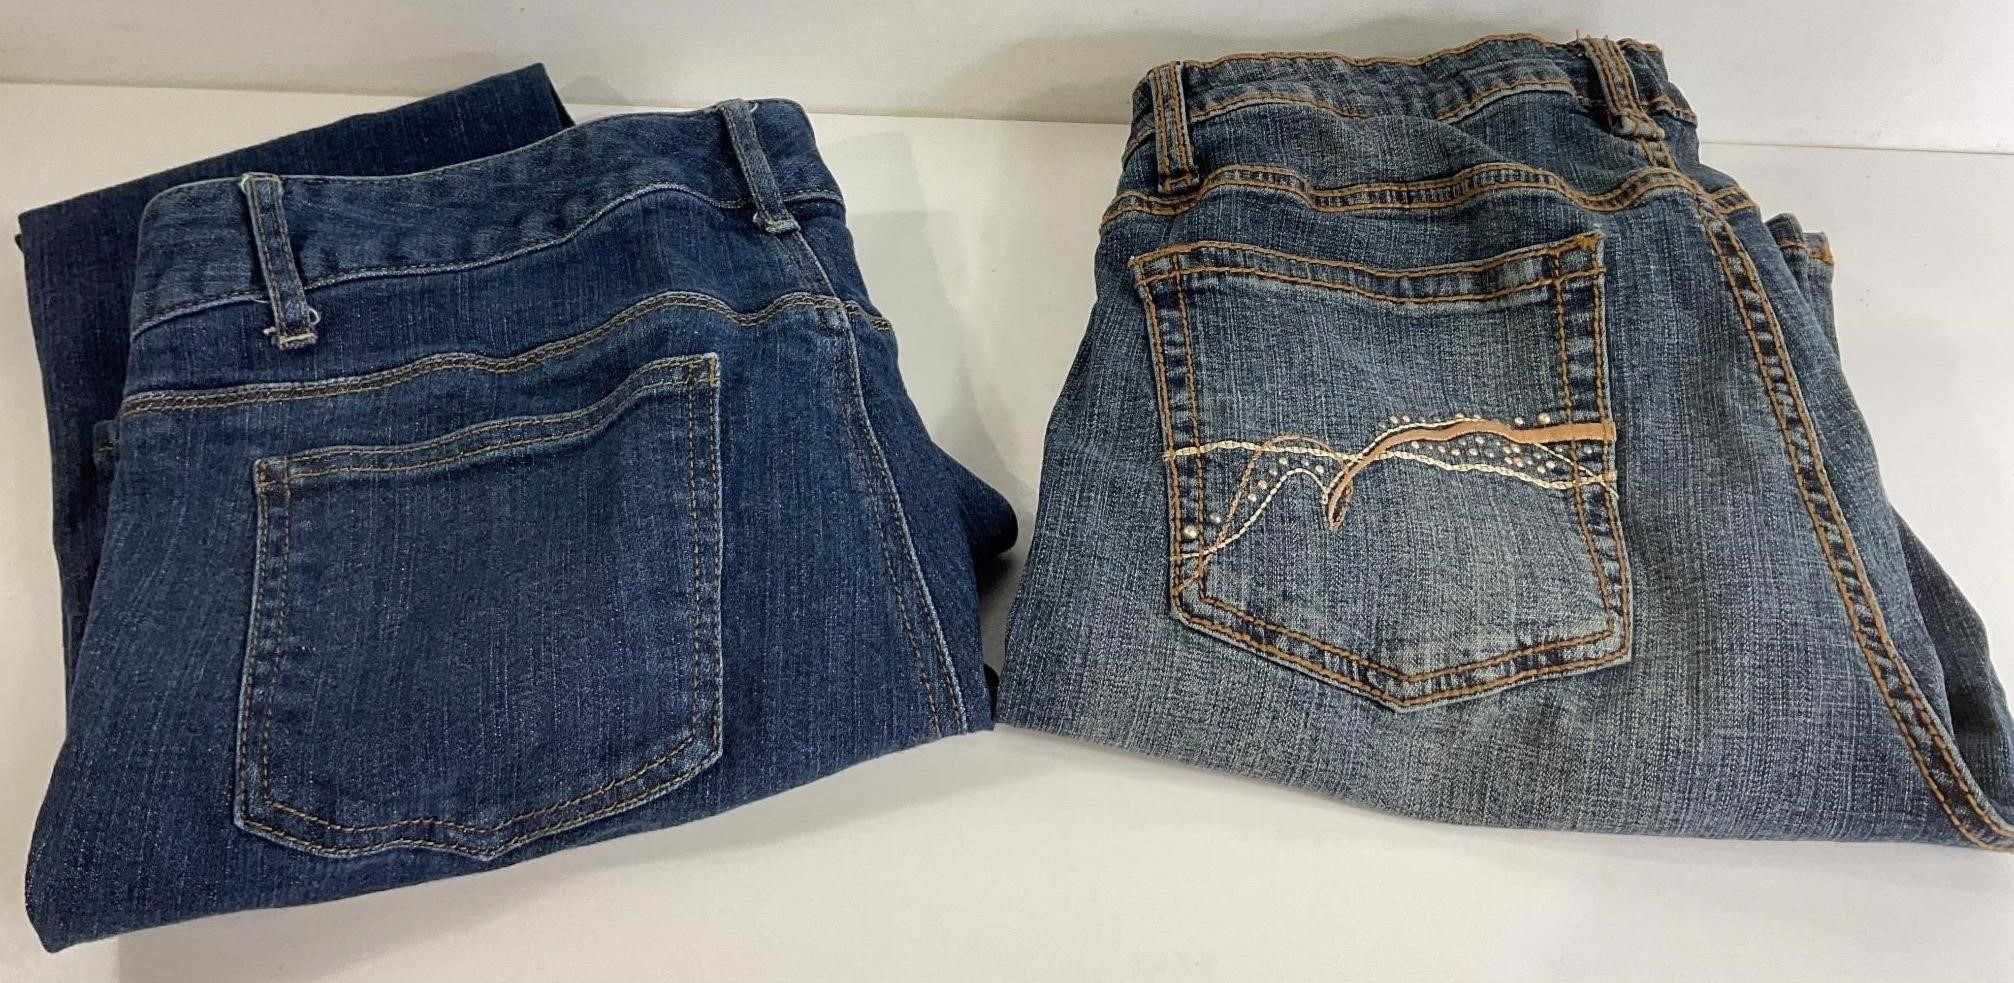 2 women’s size 10 jeans